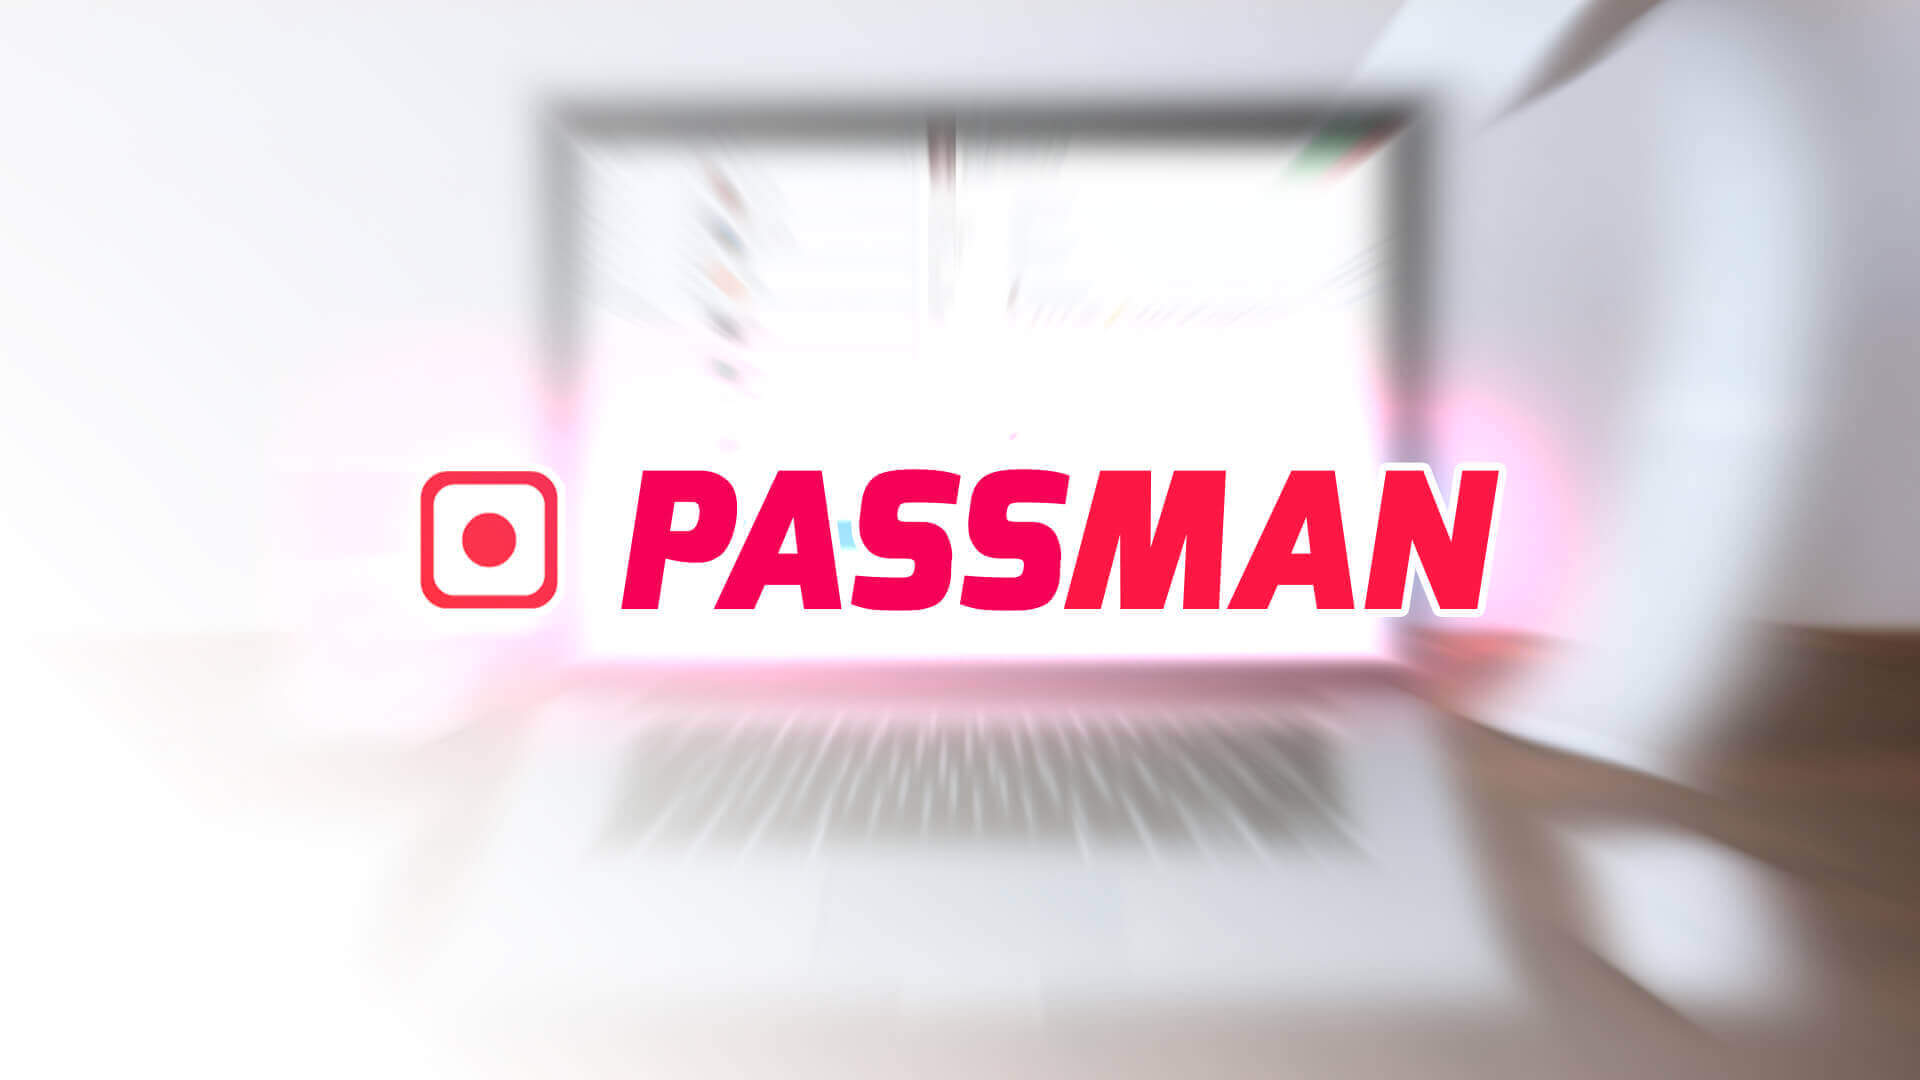 Passman - Password Manager